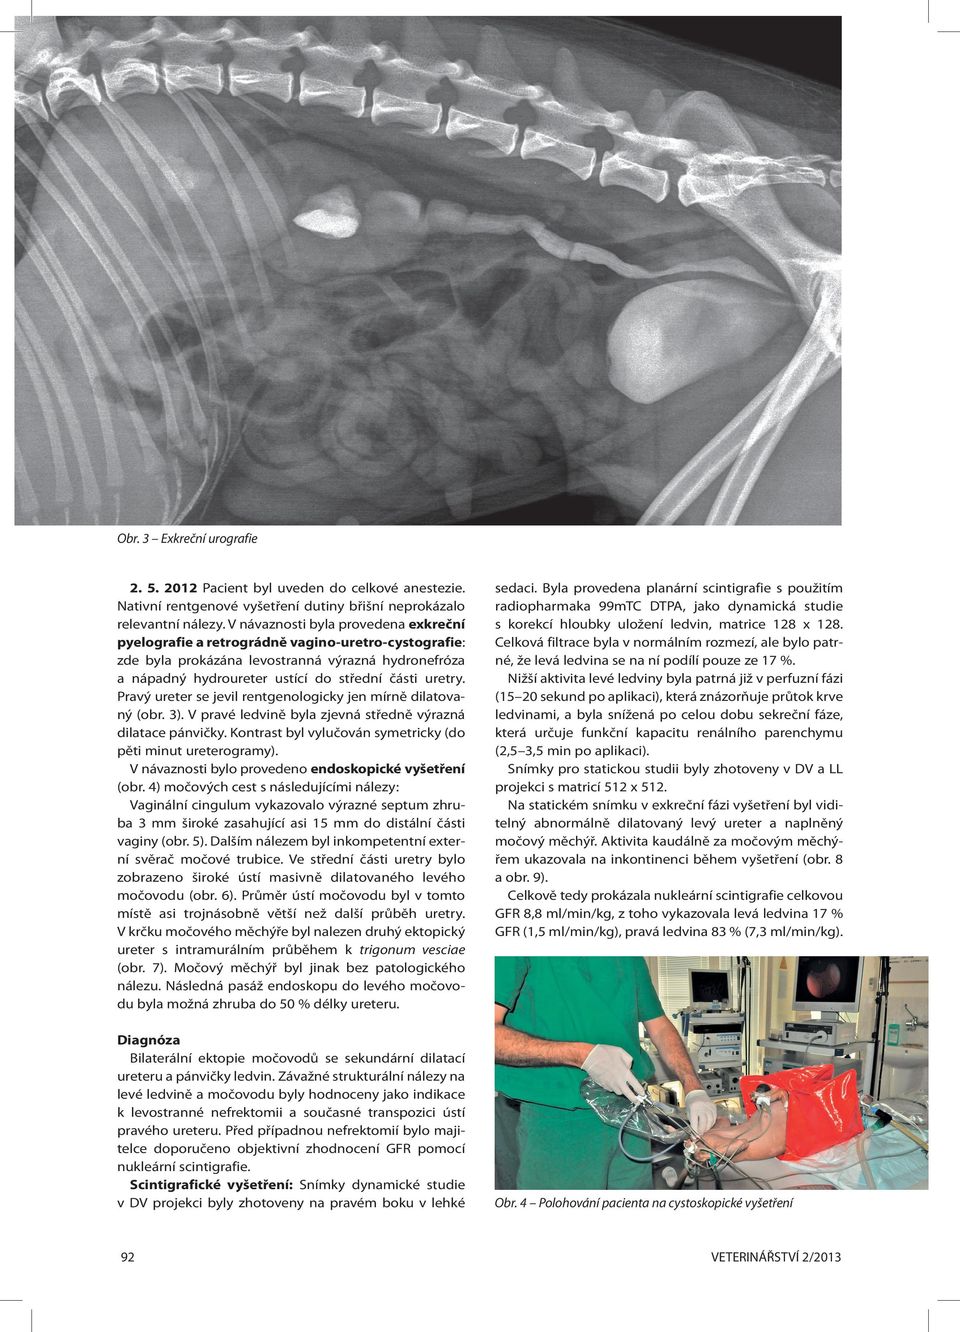 Pravý ureter se jevil rentgenologicky jen mírně dilatovaný (obr. 3). V pravé ledvině byla zjevná středně výrazná dilatace pánvičky. Kontrast byl vylučován symetricky (do pěti minut ureterogramy).